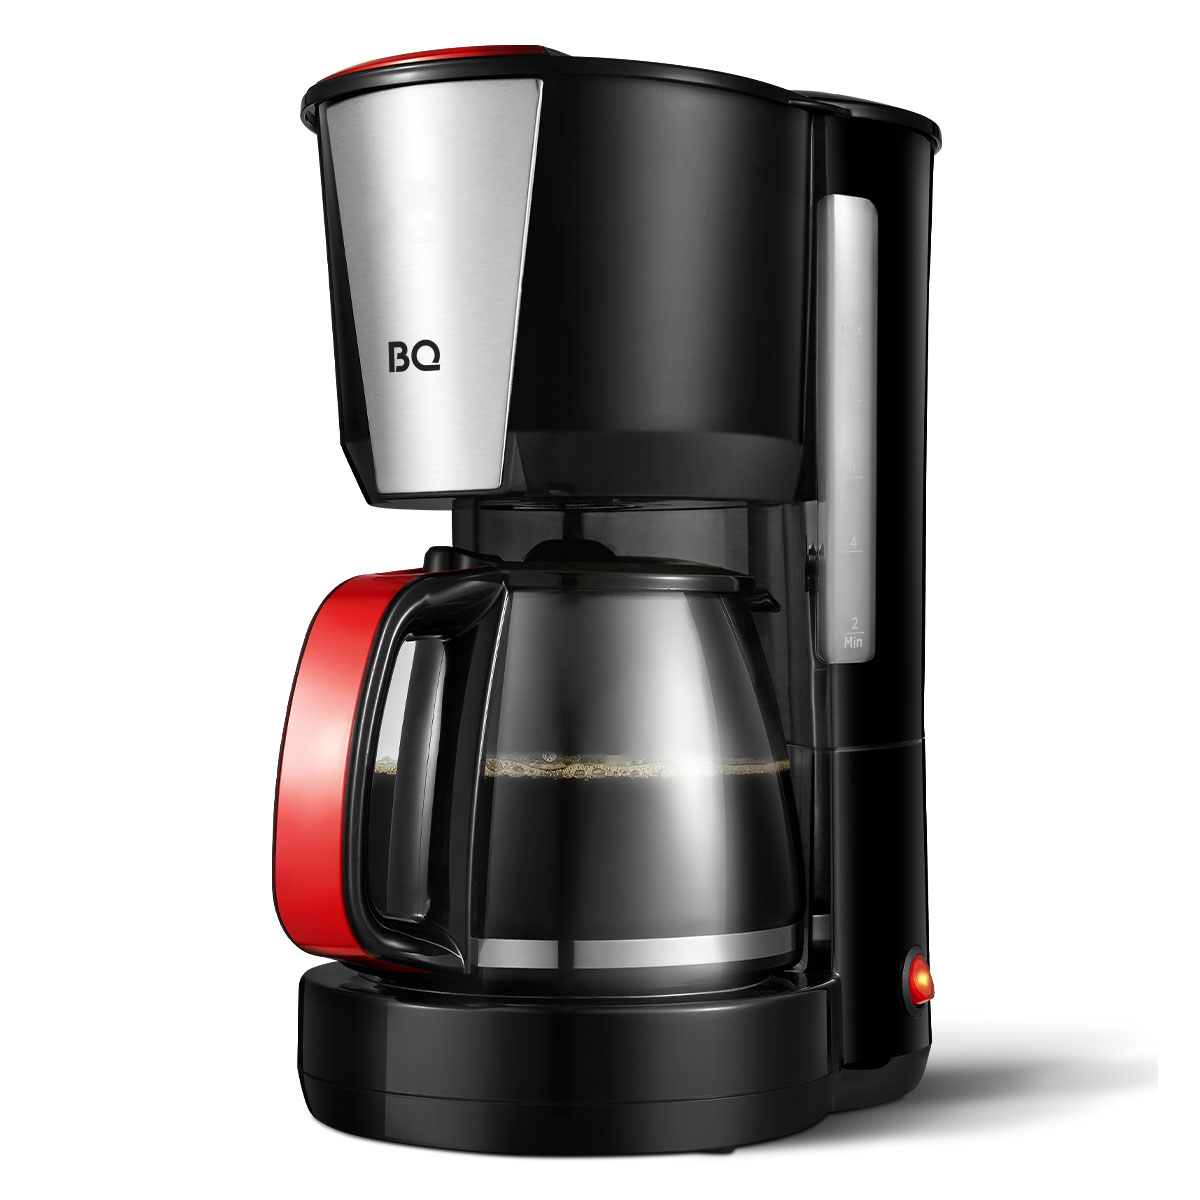 Кофеварка капельного типа BQ CM1008 красный, черный кофеварка kitchenaid 5kcm1209eer красный